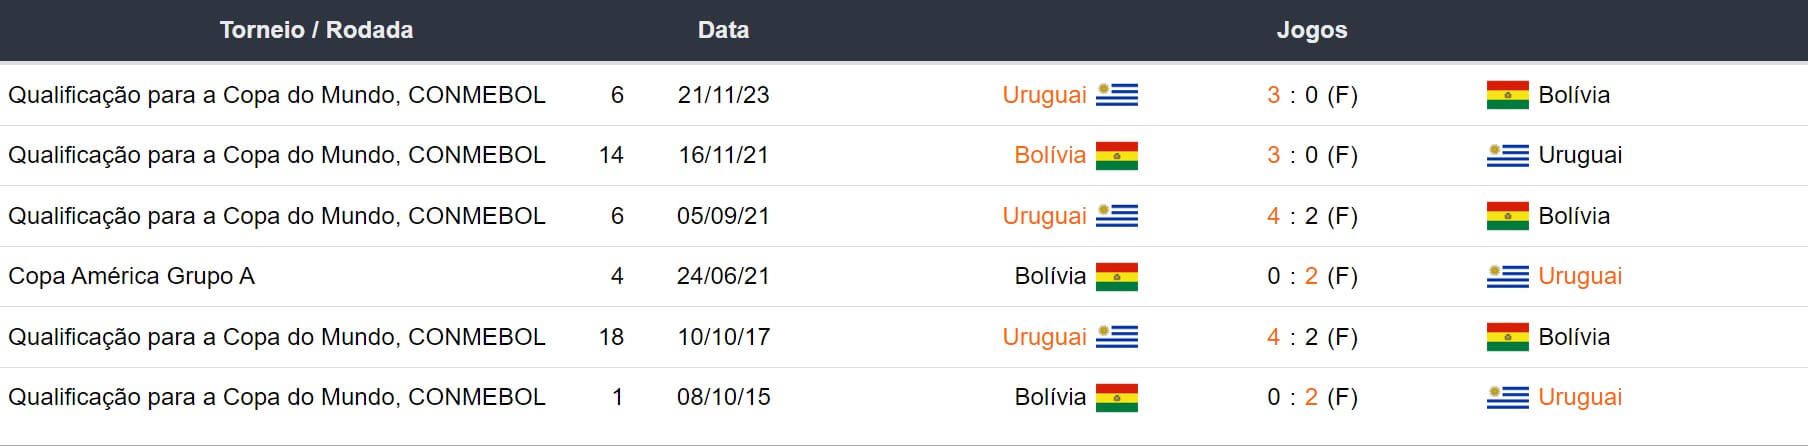 Ultimos encontros Uruguai x Bolivia 160424